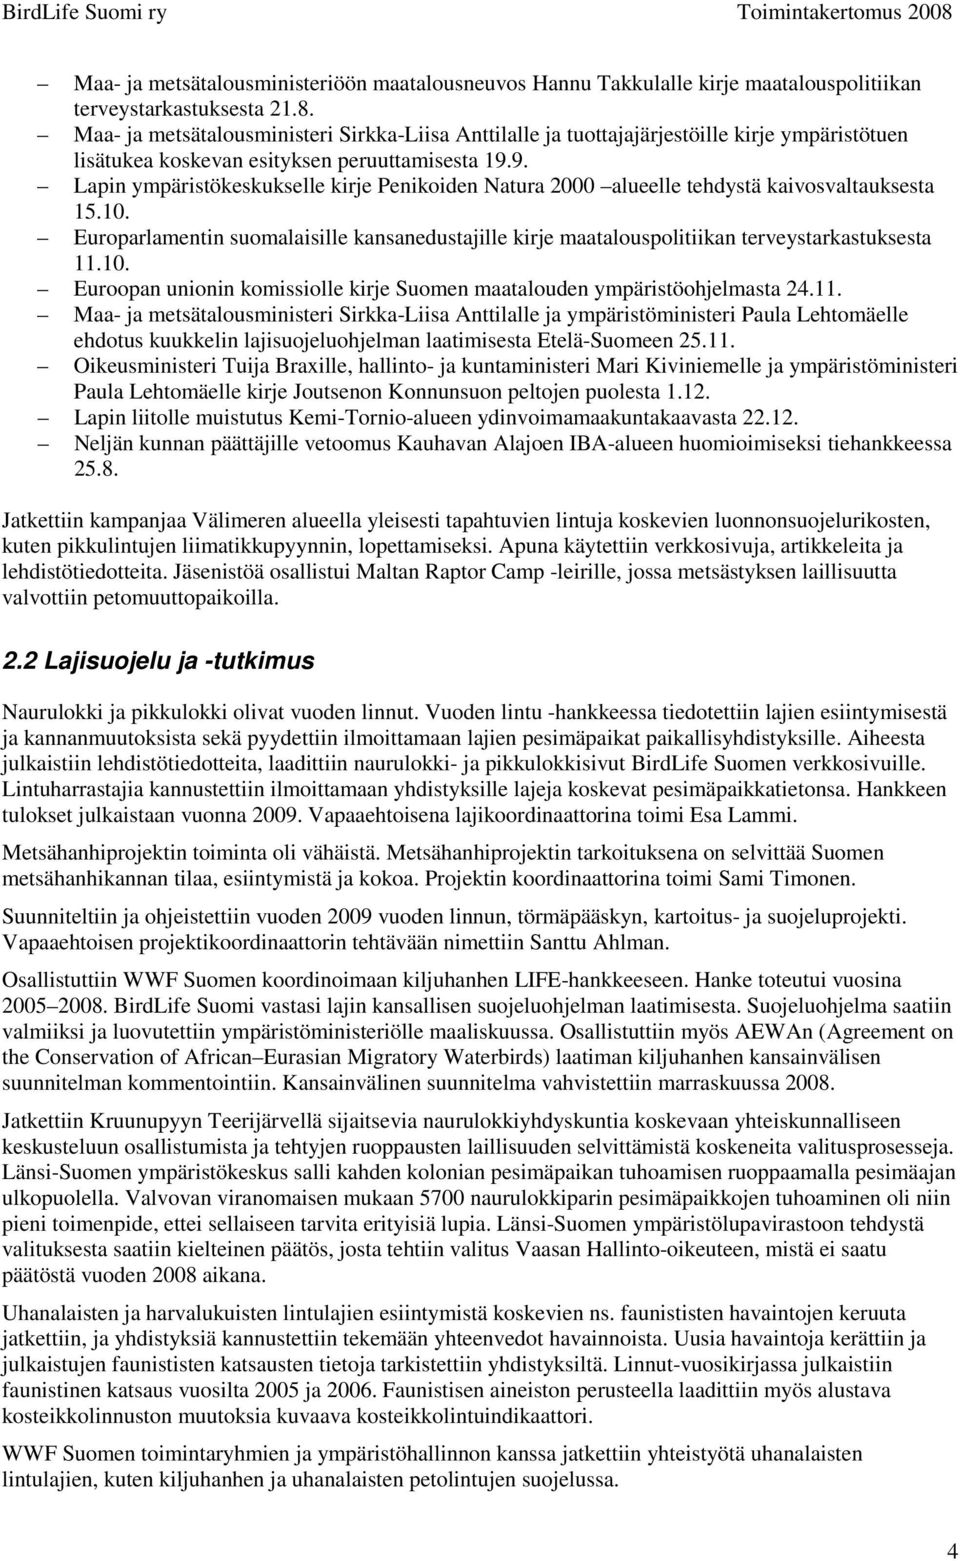 9. Lapin ympäristökeskukselle kirje Penikoiden Natura 2000 alueelle tehdystä kaivosvaltauksesta 15.10.